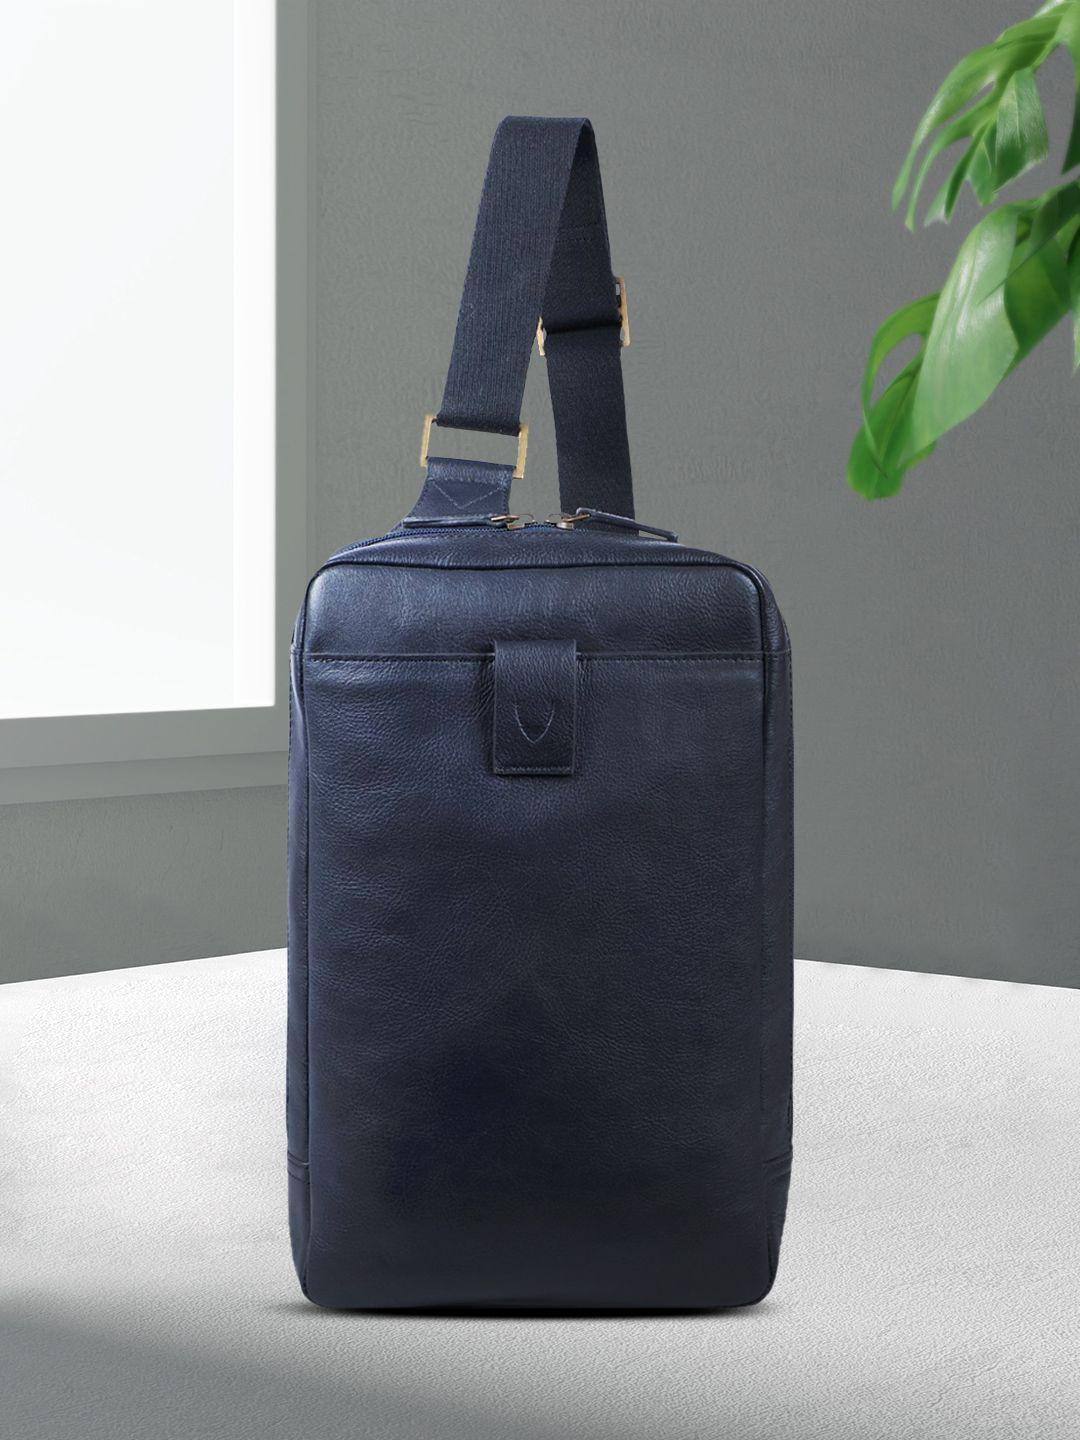 hidesign blue solid handheld bag